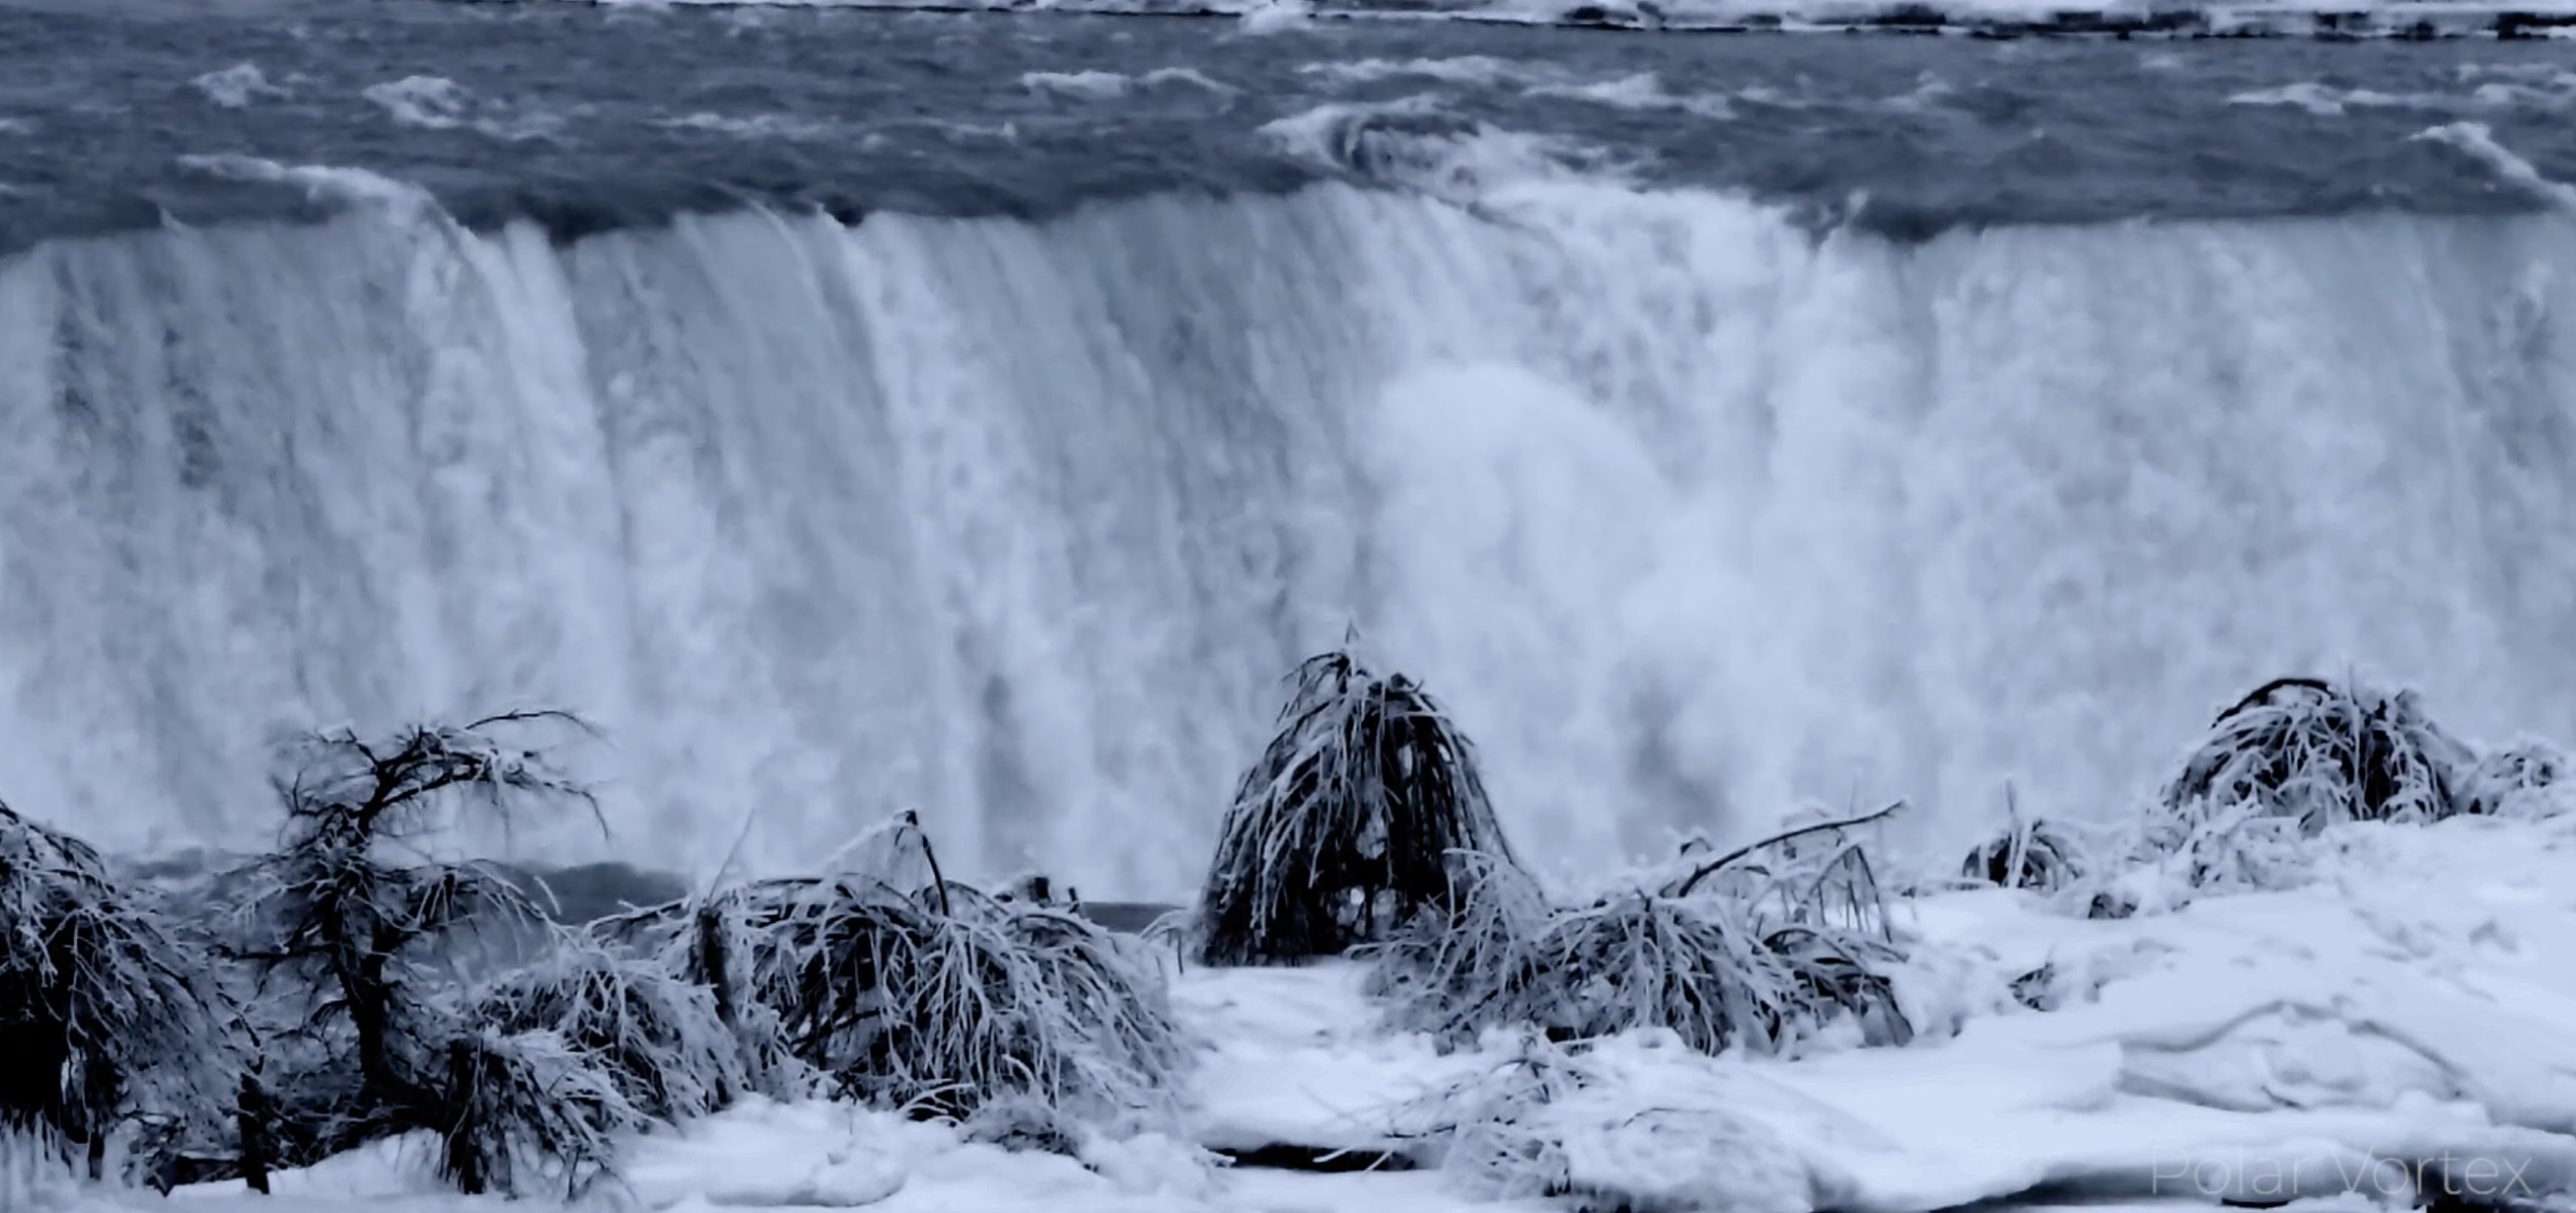 Polar Vortex At Niagara Falls Buffalo Rising